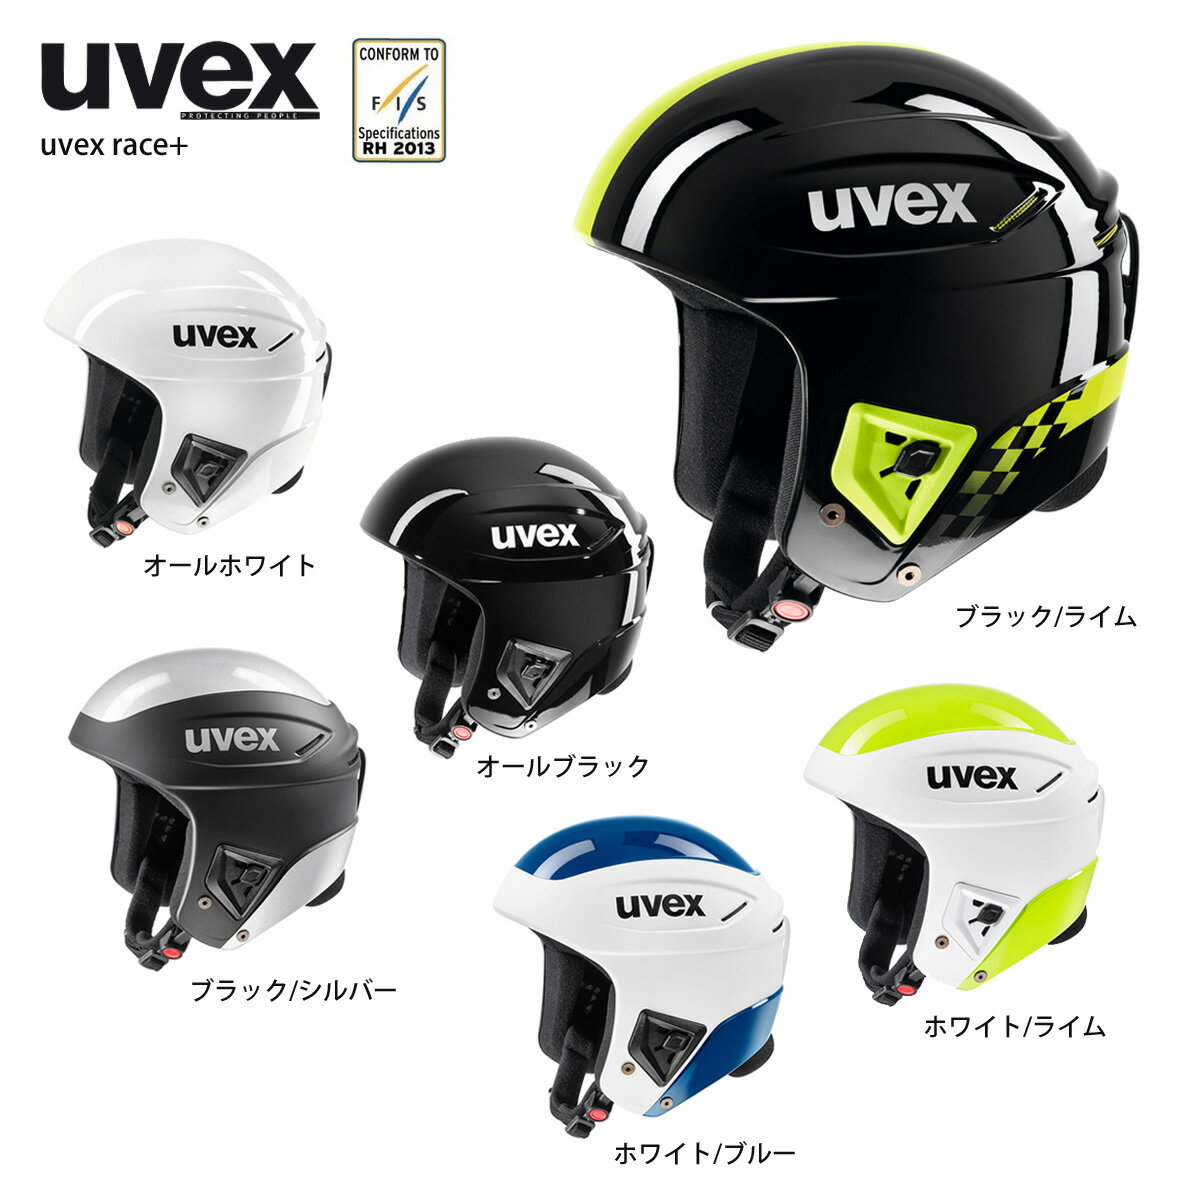 【スーパーセール対象！】スキー ヘルメット メンズ レディース スノーボード ウベックス UVEX 2022 race+ レースプラス FIS対応